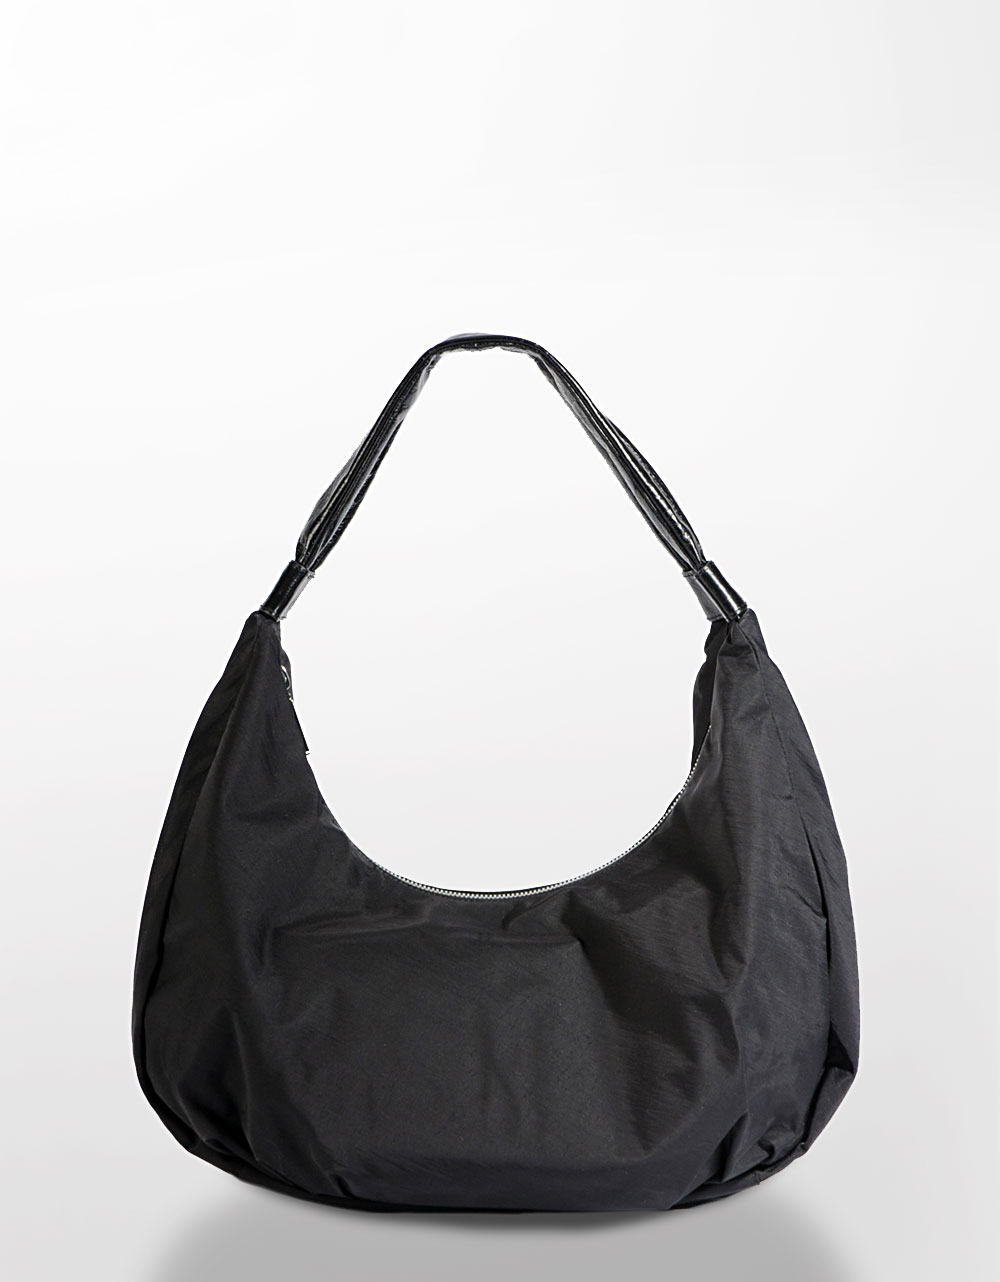 Lyst - Hobo International Turner Nylon Hobo Bag in Black